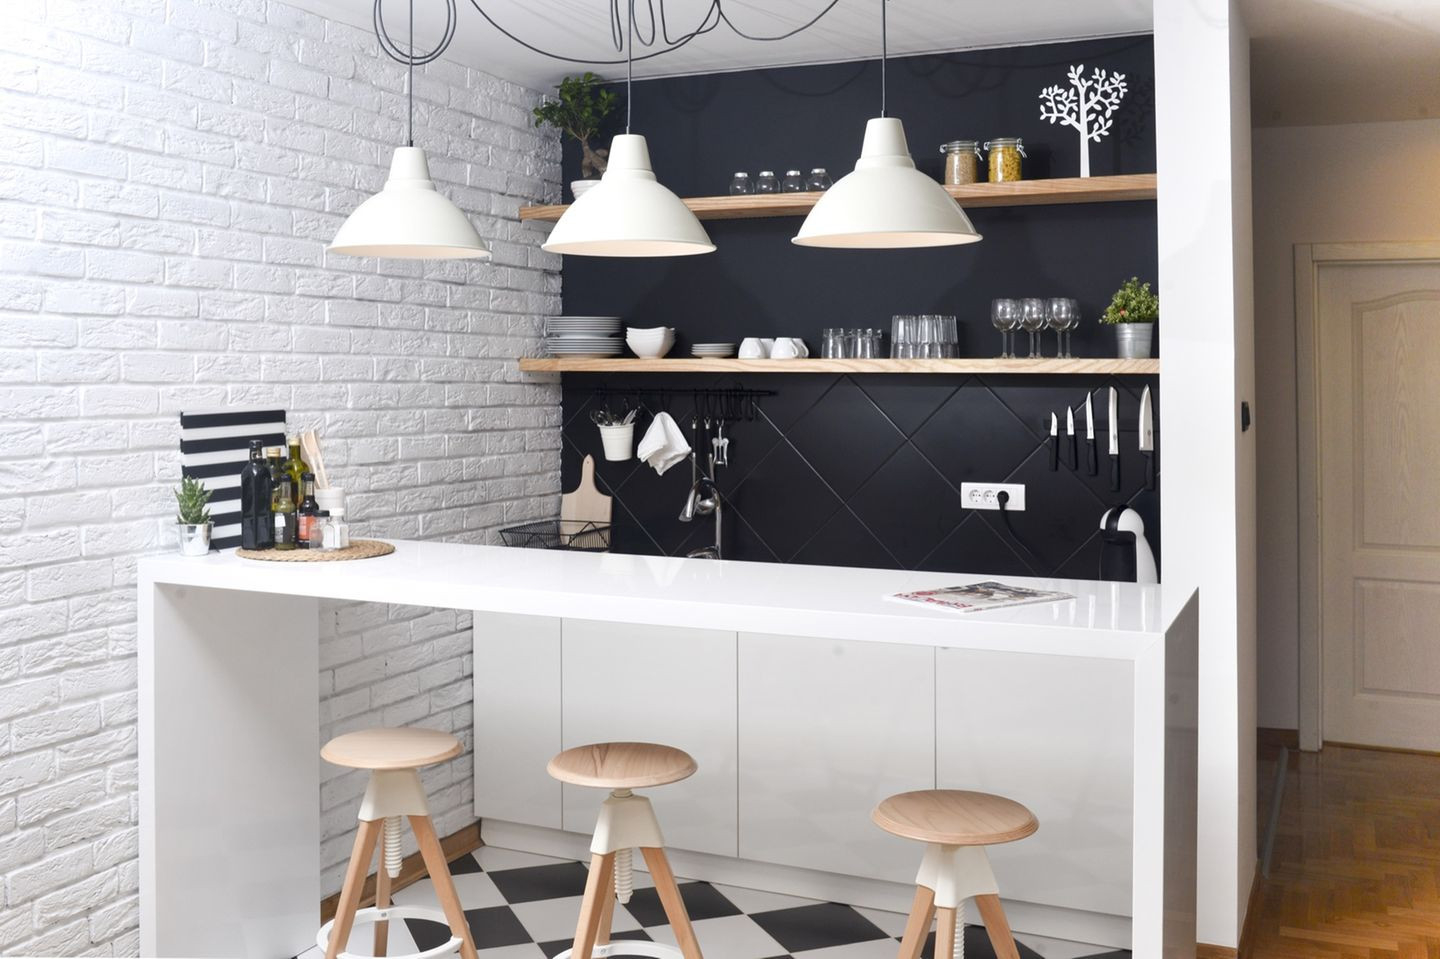 Küche Einrichten: So Nutzt Du Den Raum Optimal! | Brigitte.de